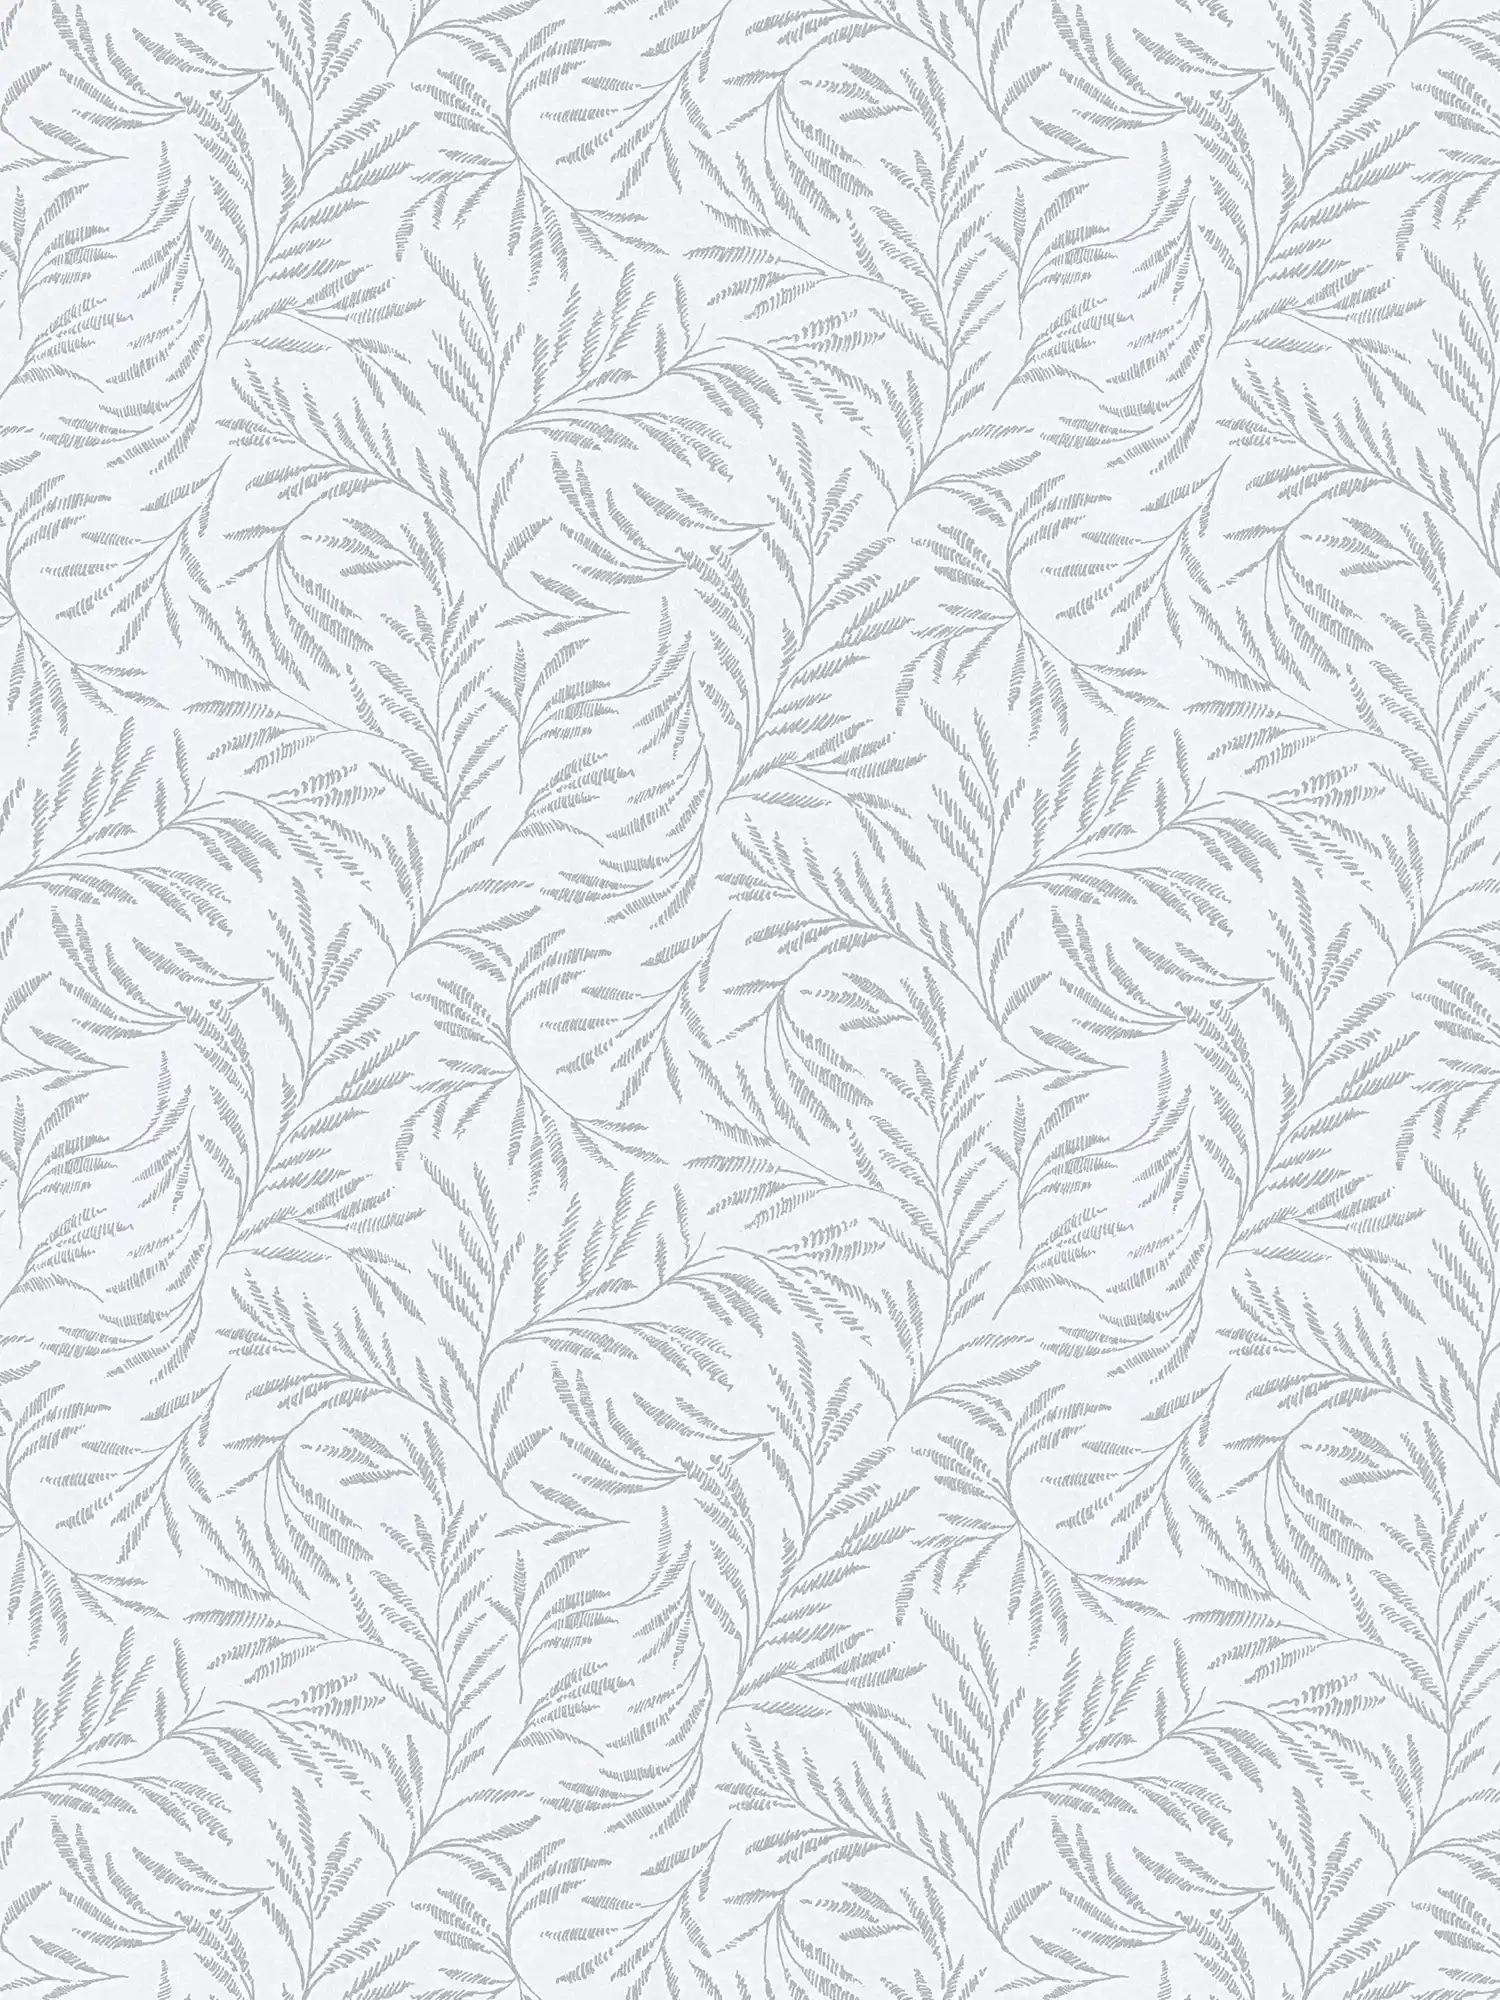         Vliestapete Metallic Muster mit Blätterranken – Grau, Silber
    